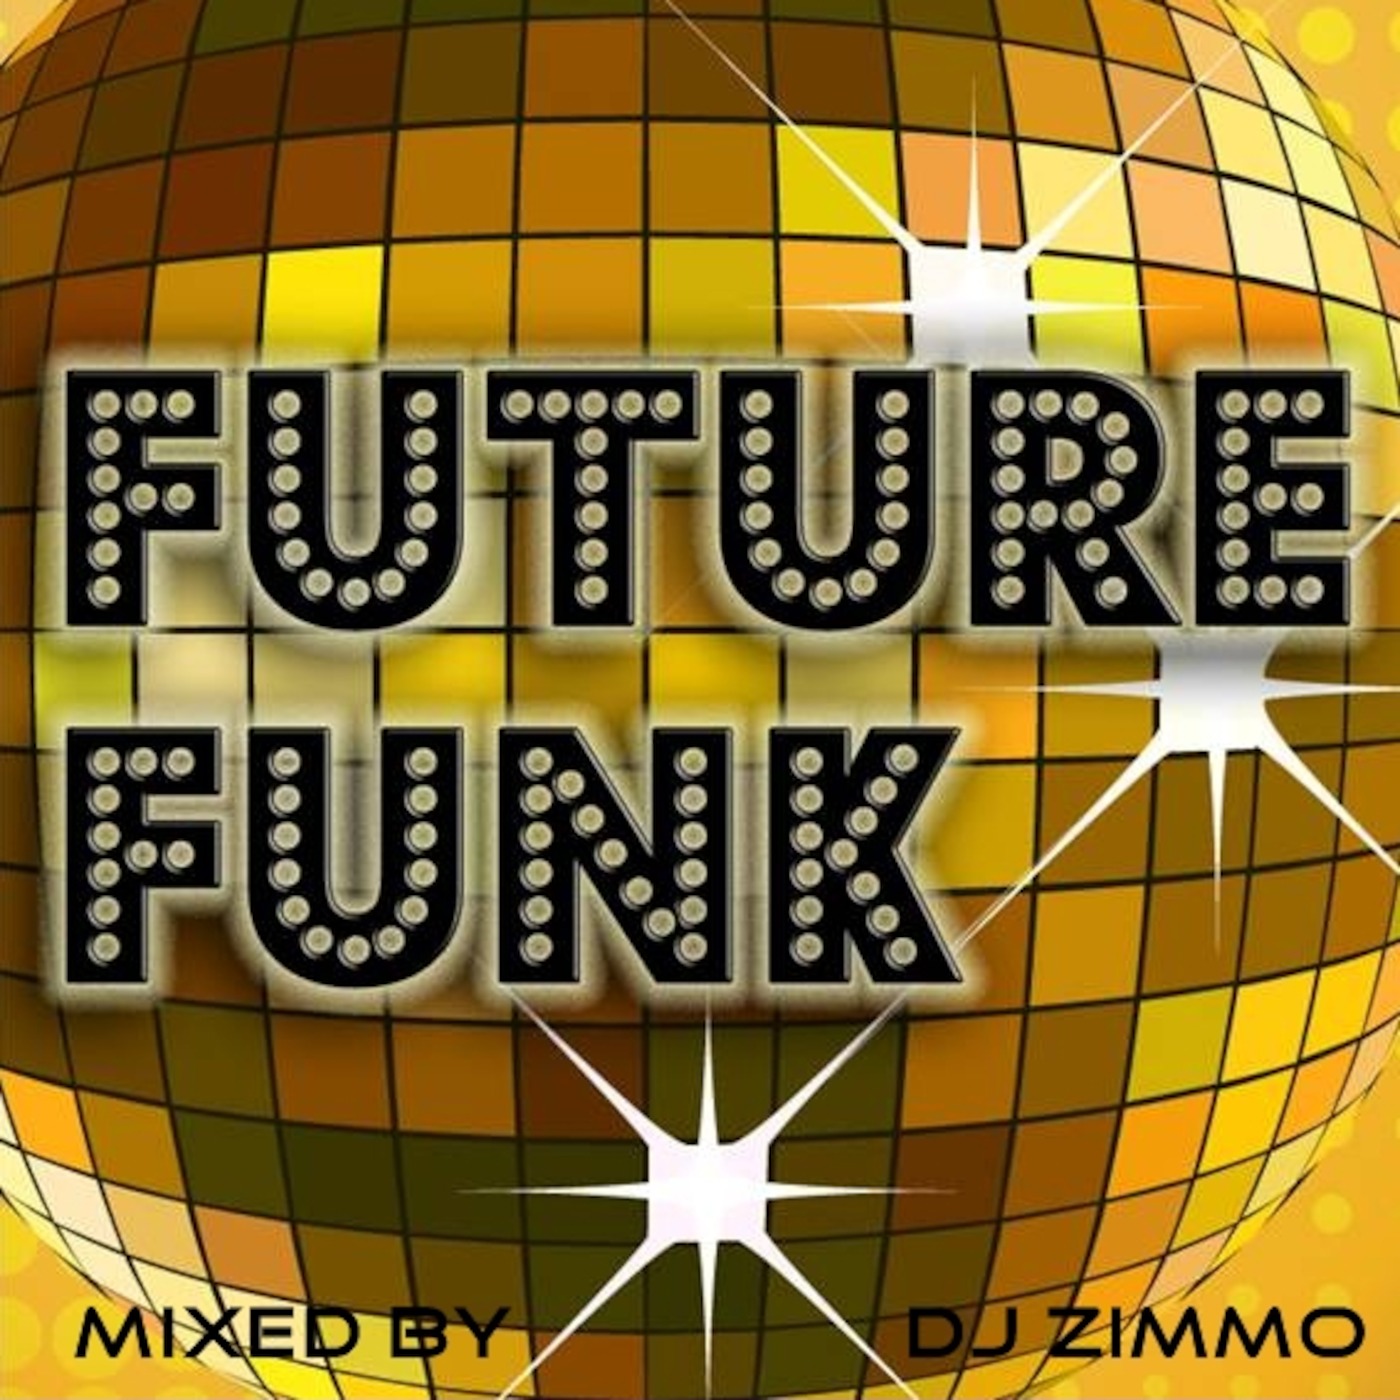 Future Funk - January 2011